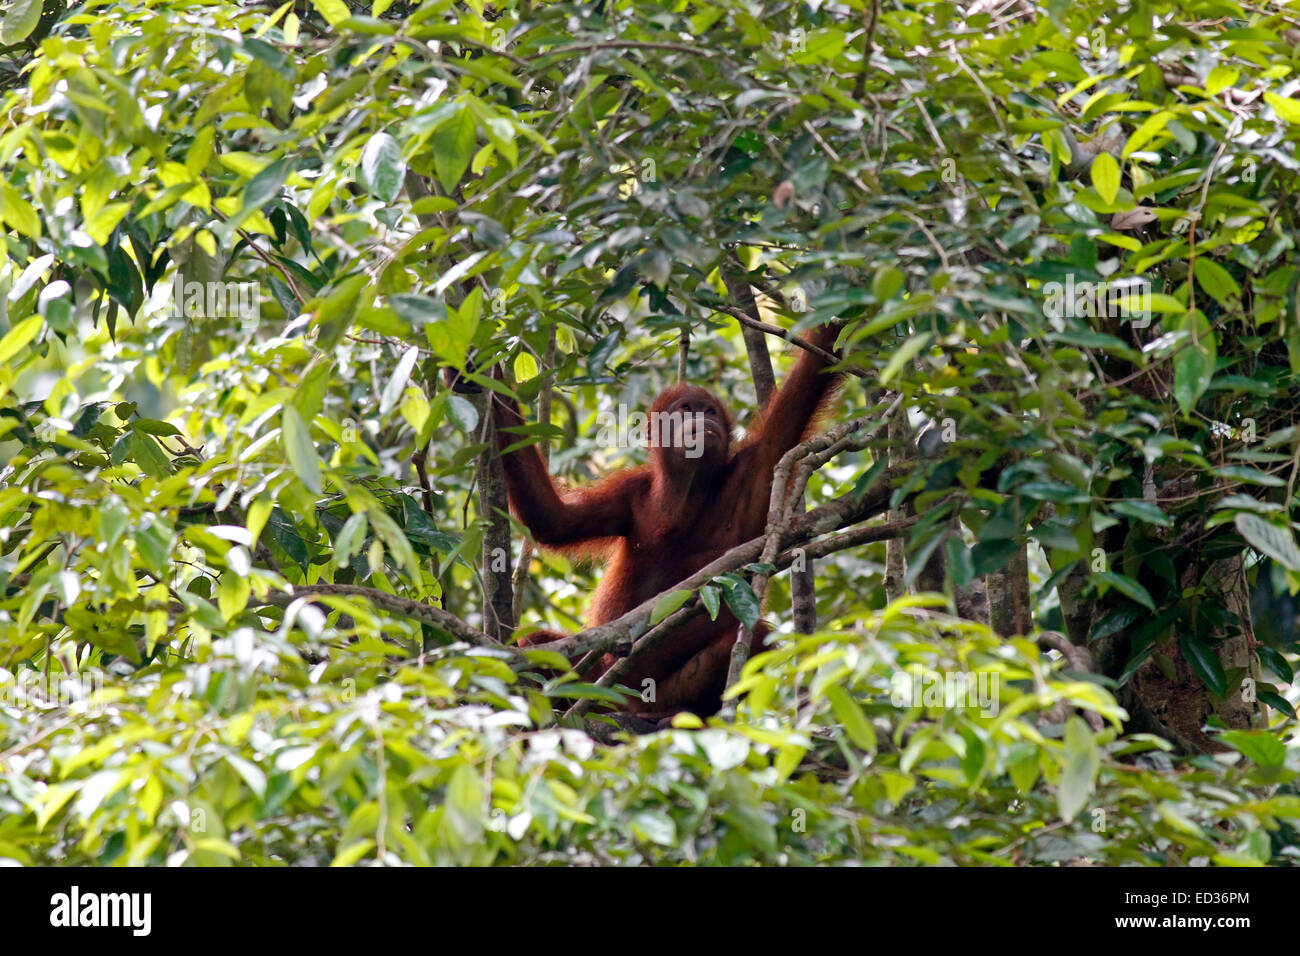 Orang utan in a tree at Sepilok Rehabilitation Centre, Sabah, Malaysia Stock Photo